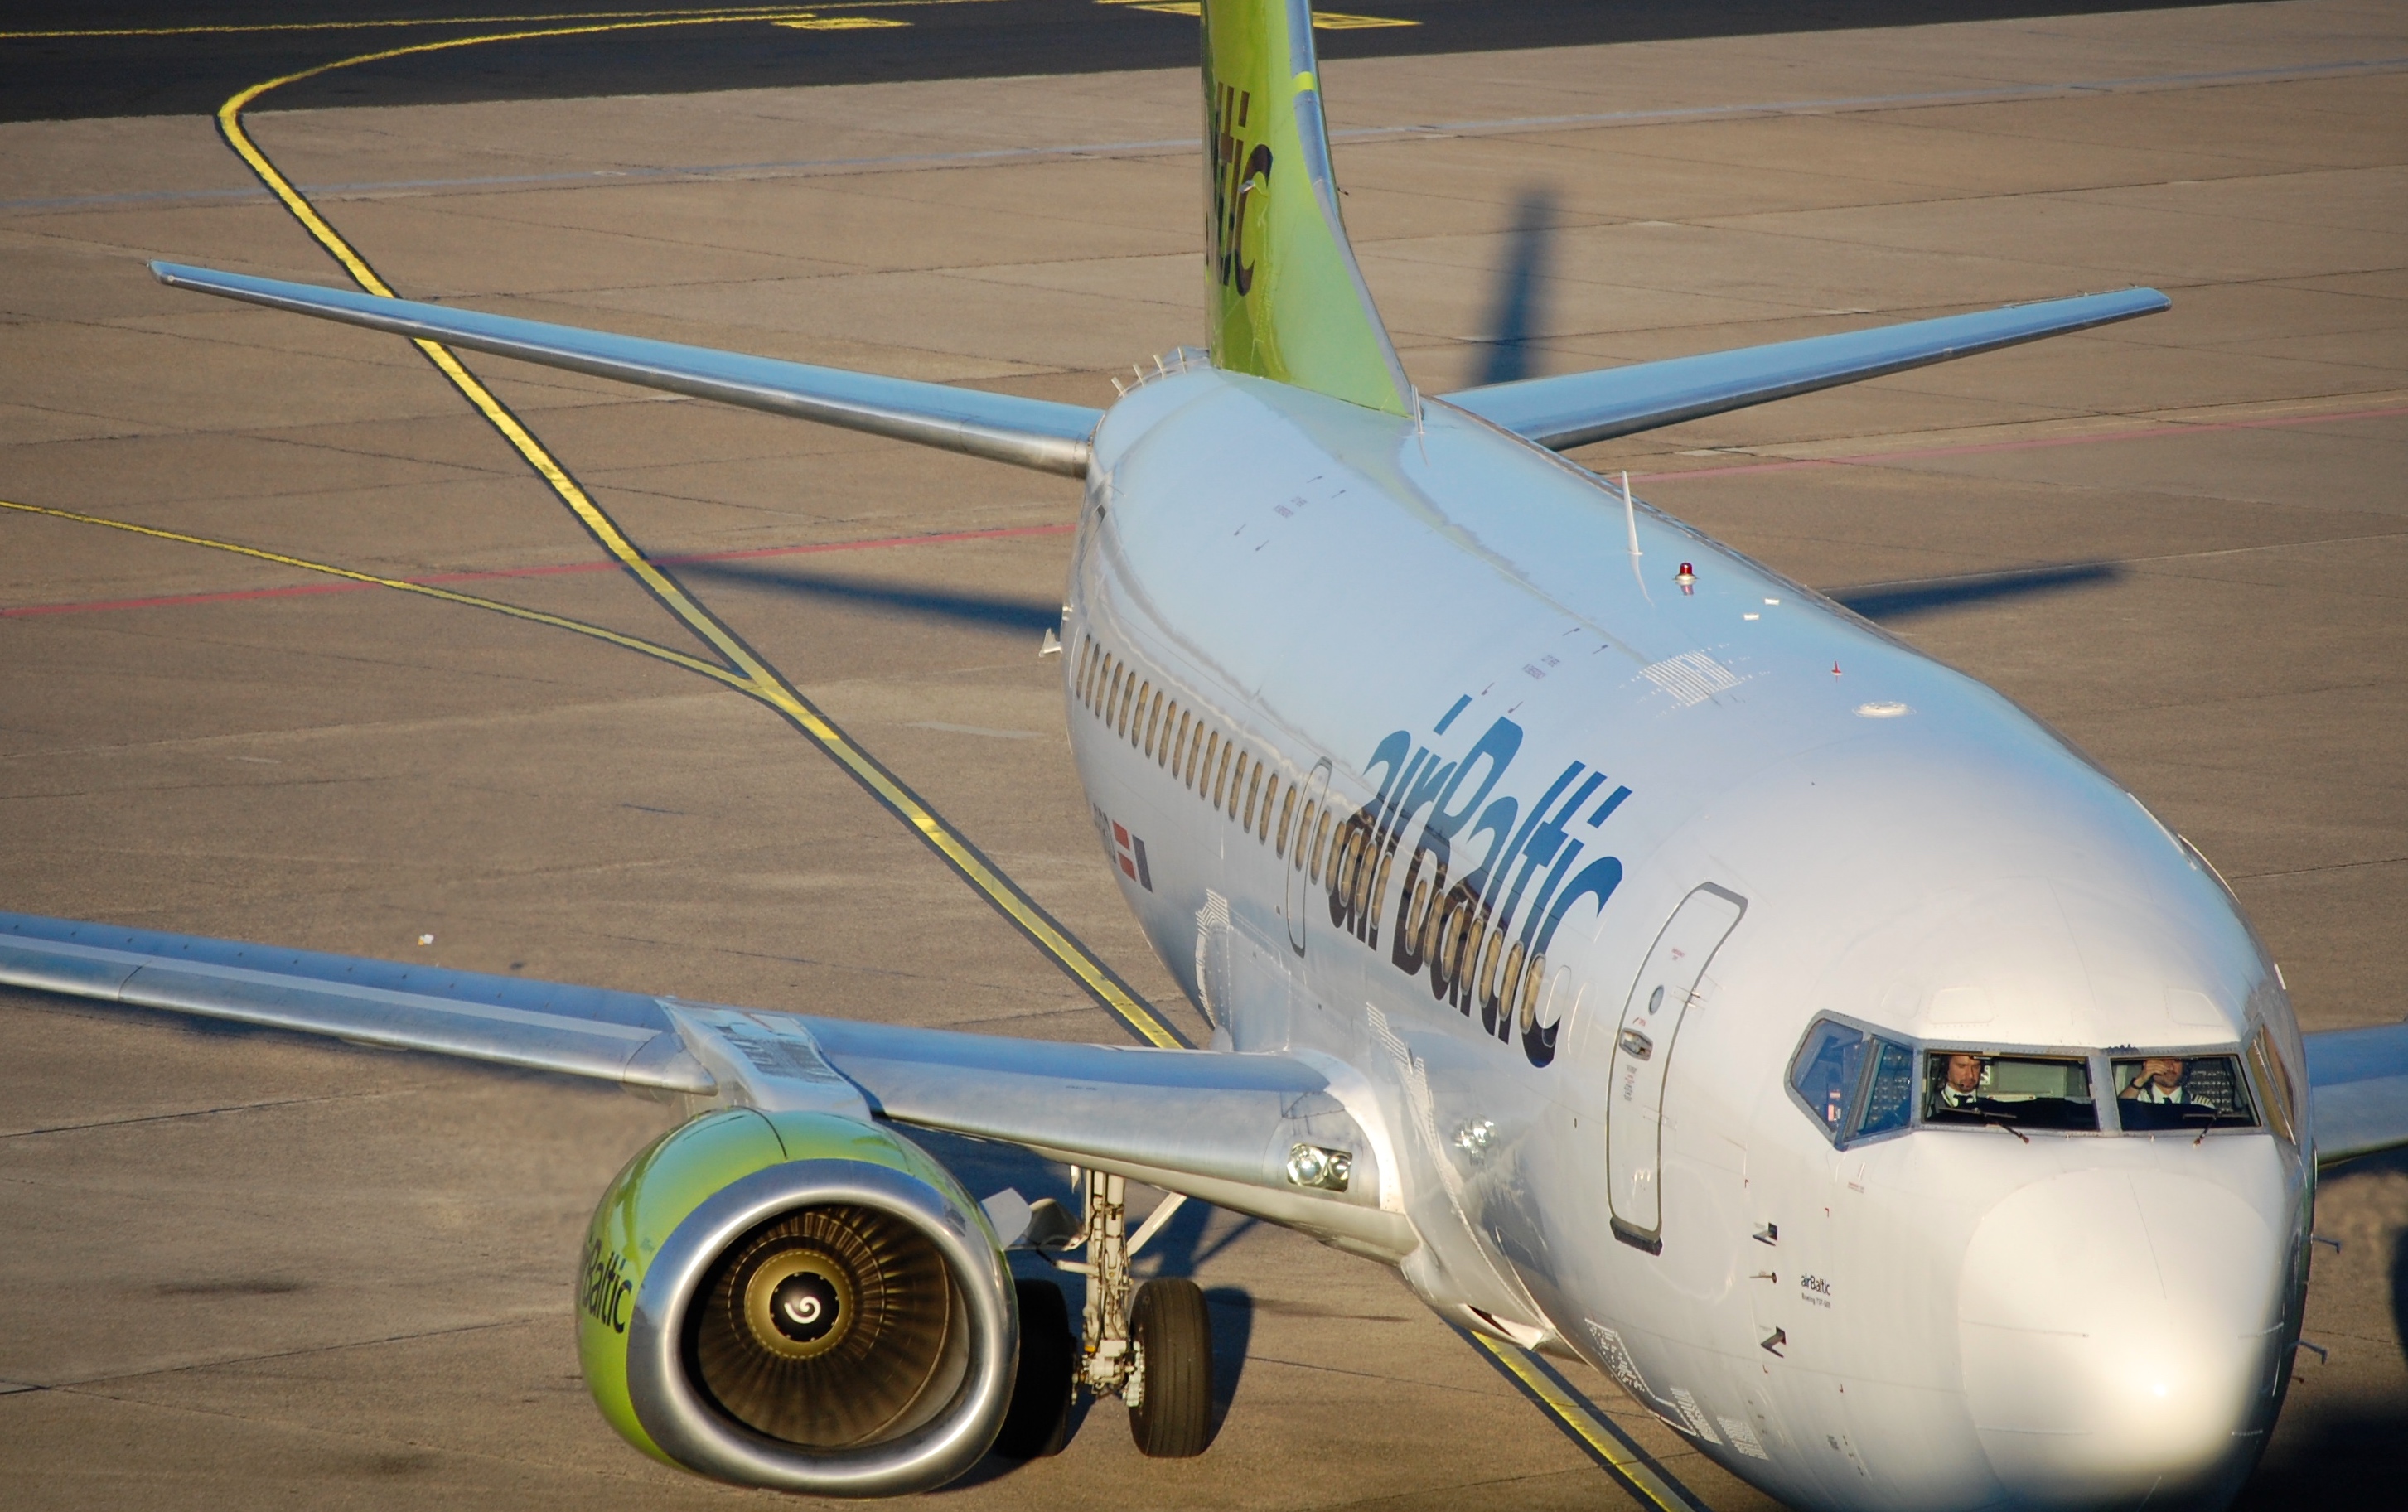 		Sale bei airBaltic – Flüge ab 15€ pro Strecke buchen!
	